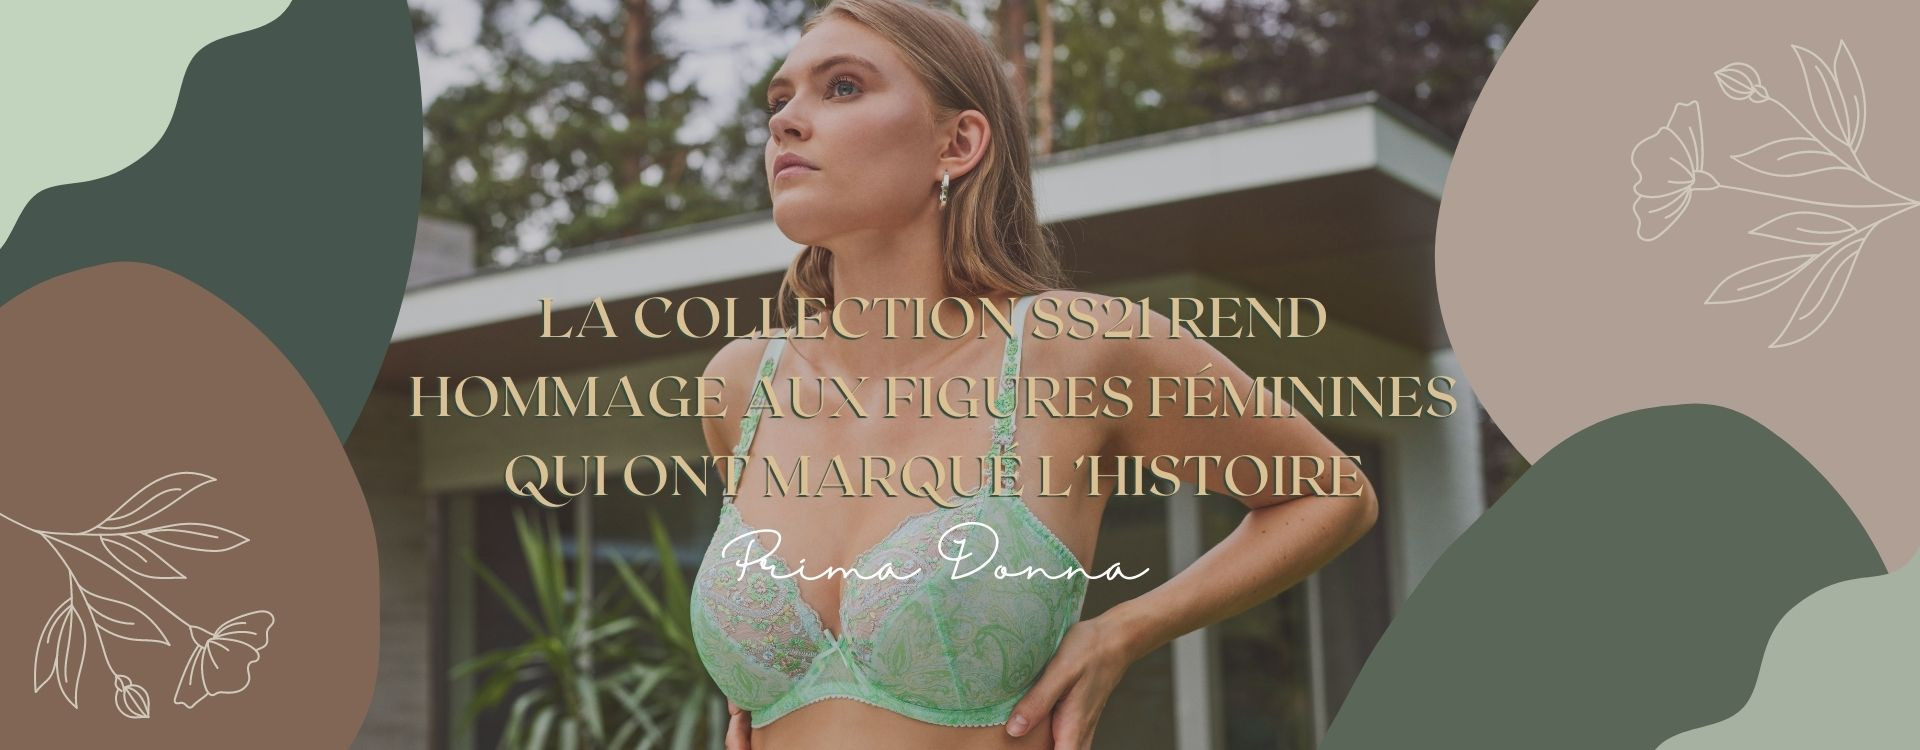 La collection PrimaDonna SS21 rend hommage aux figures féminines qui ont marqué l’Histoire